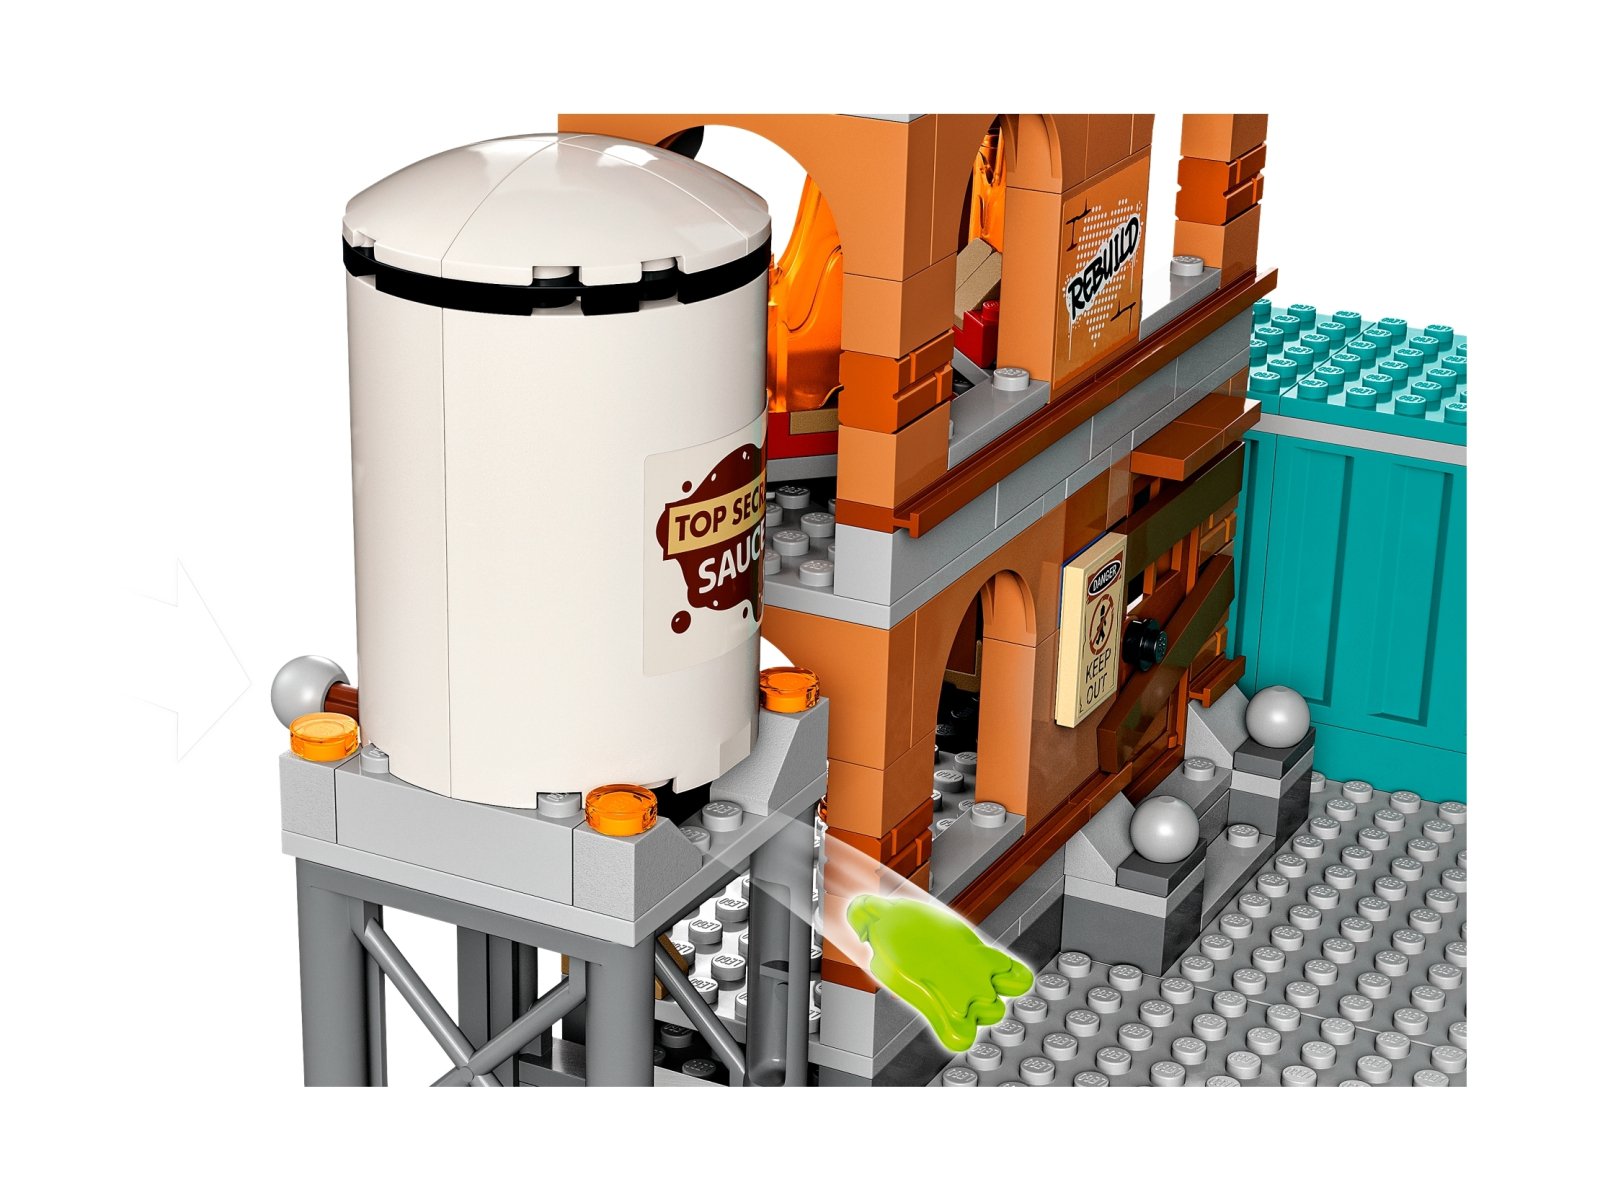 LEGO 60321 Straż pożarna